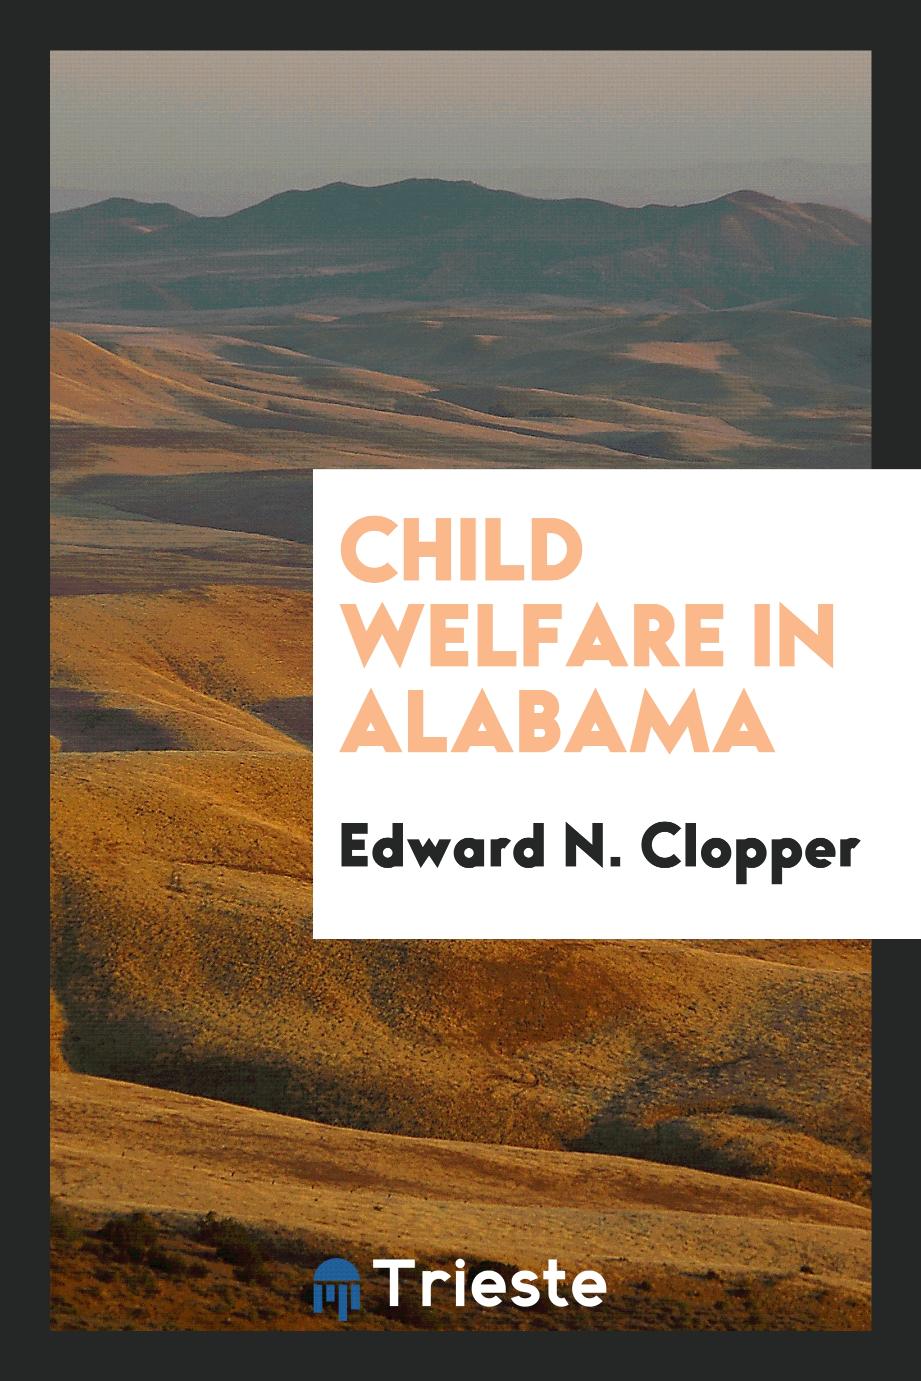 Child welfare in Alabama